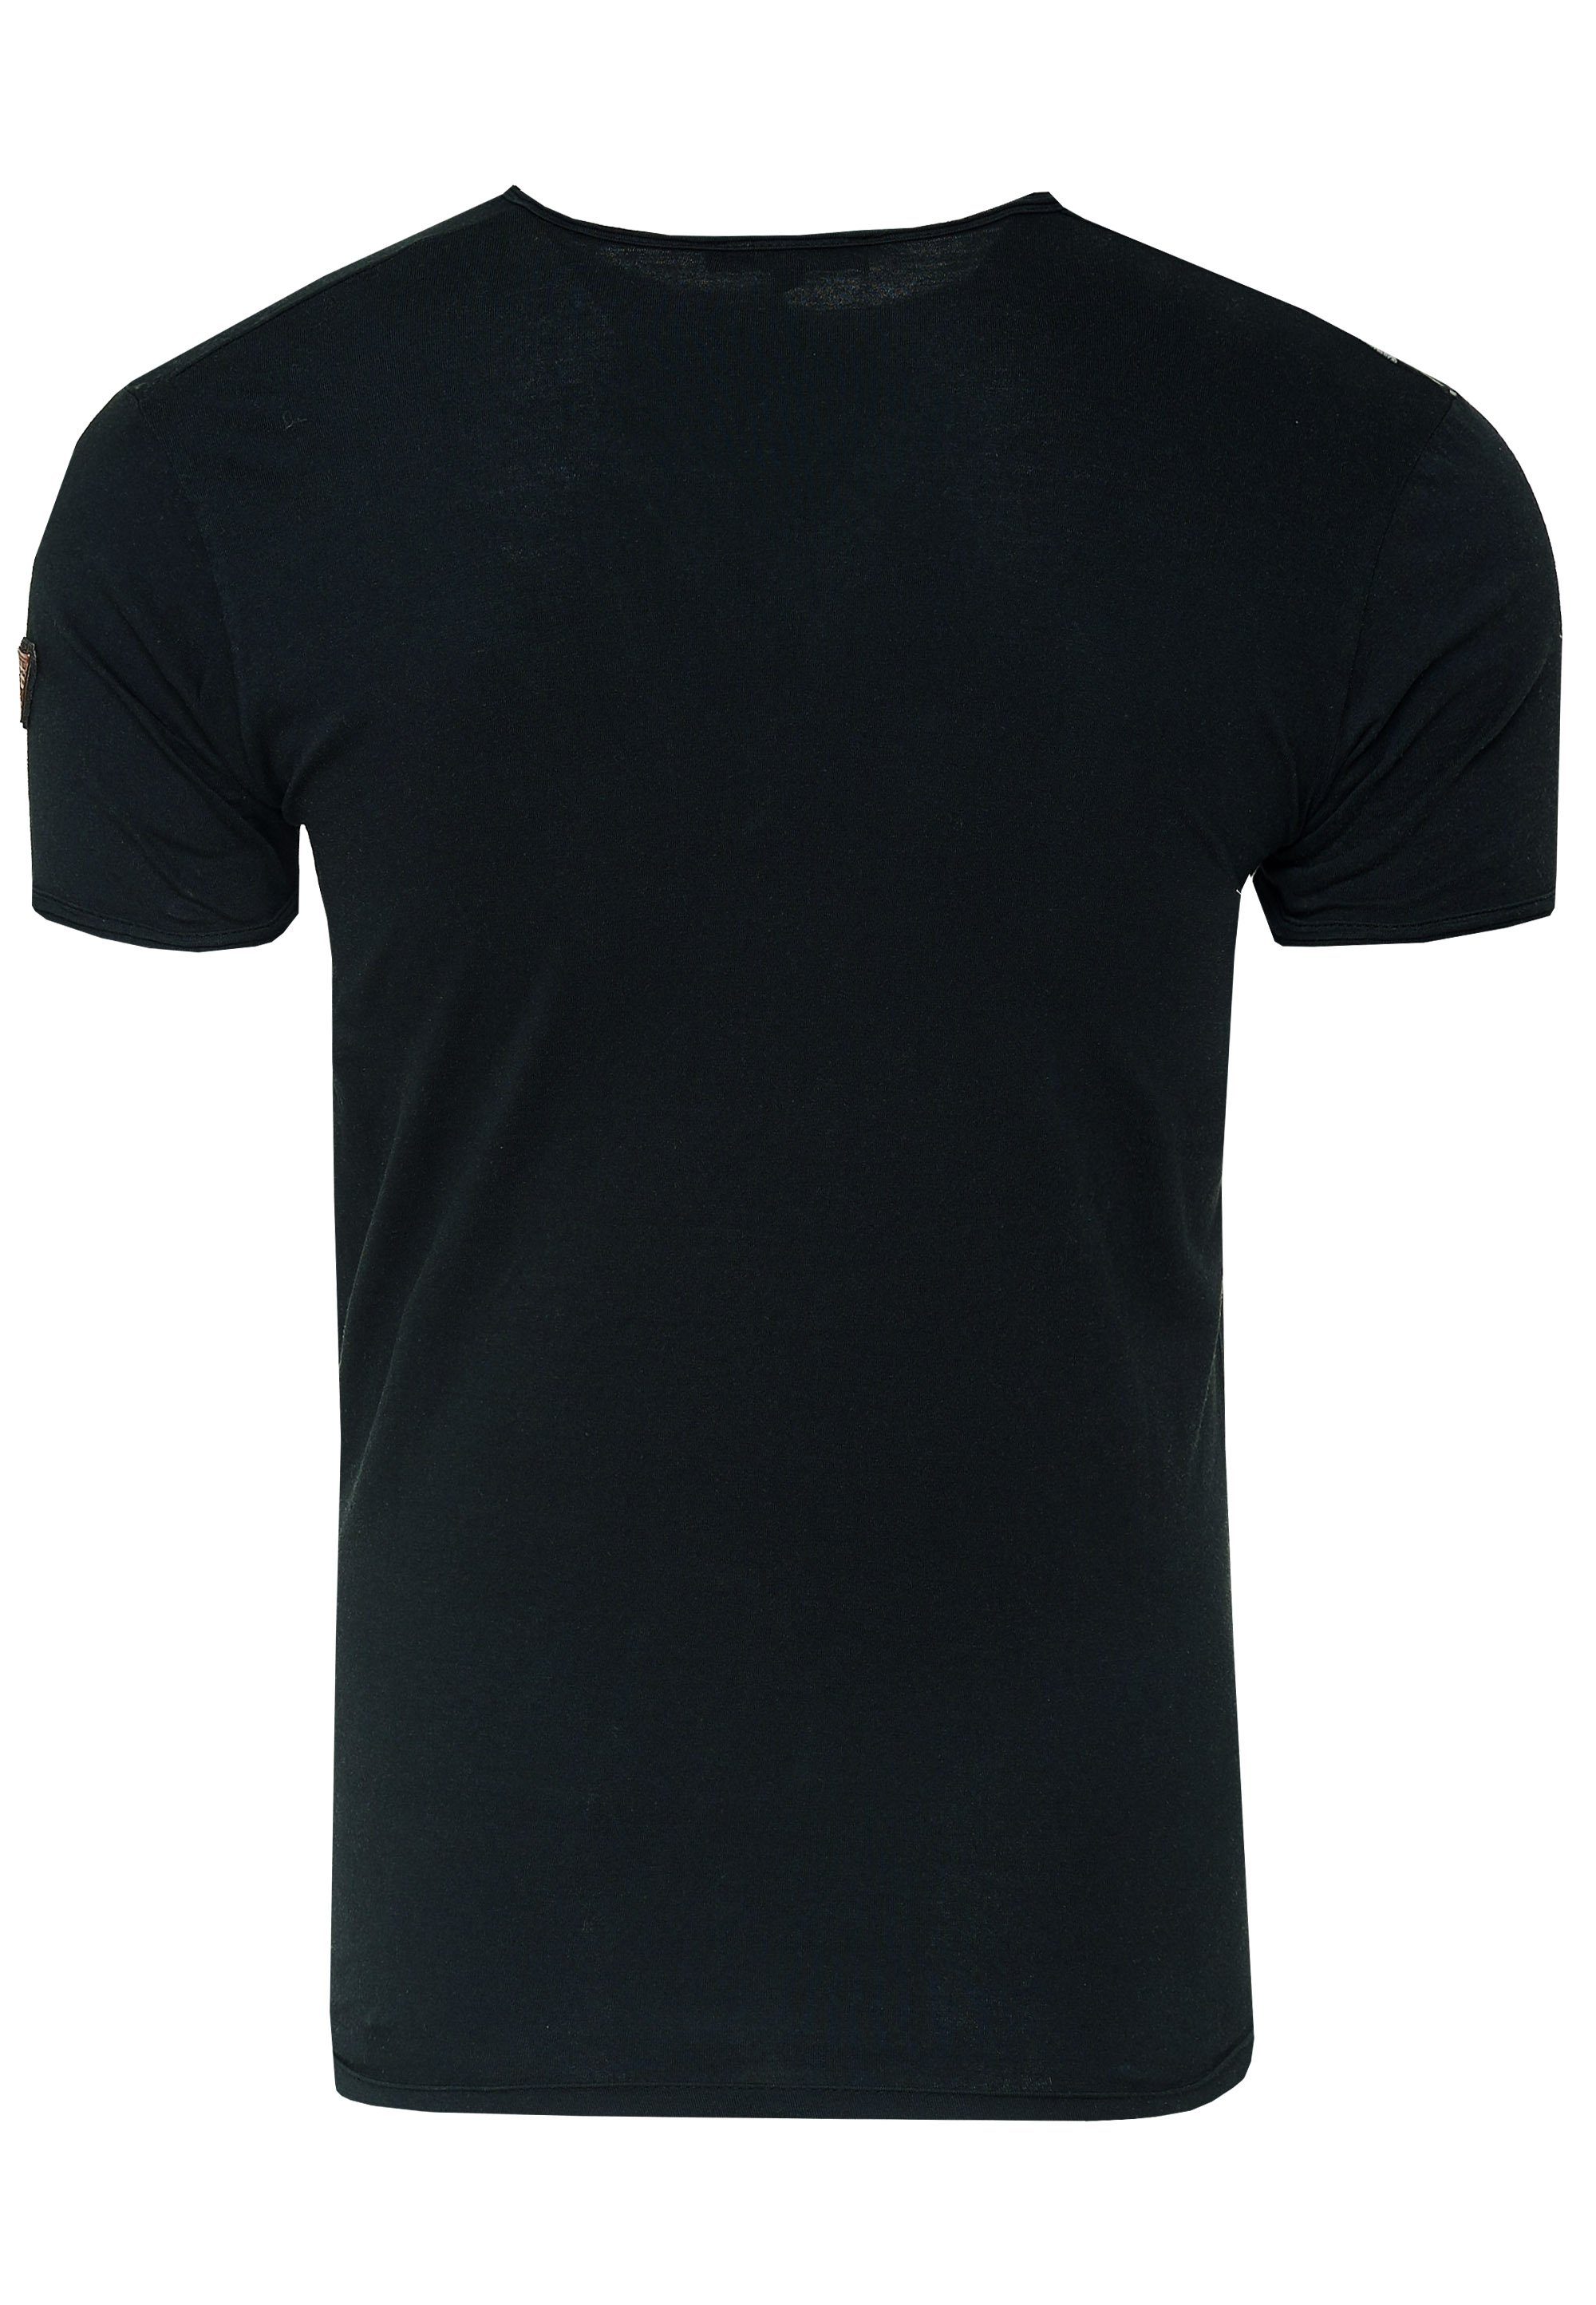 Rusty Neal T-Shirt schwarz-weiß mit seitlichem Print